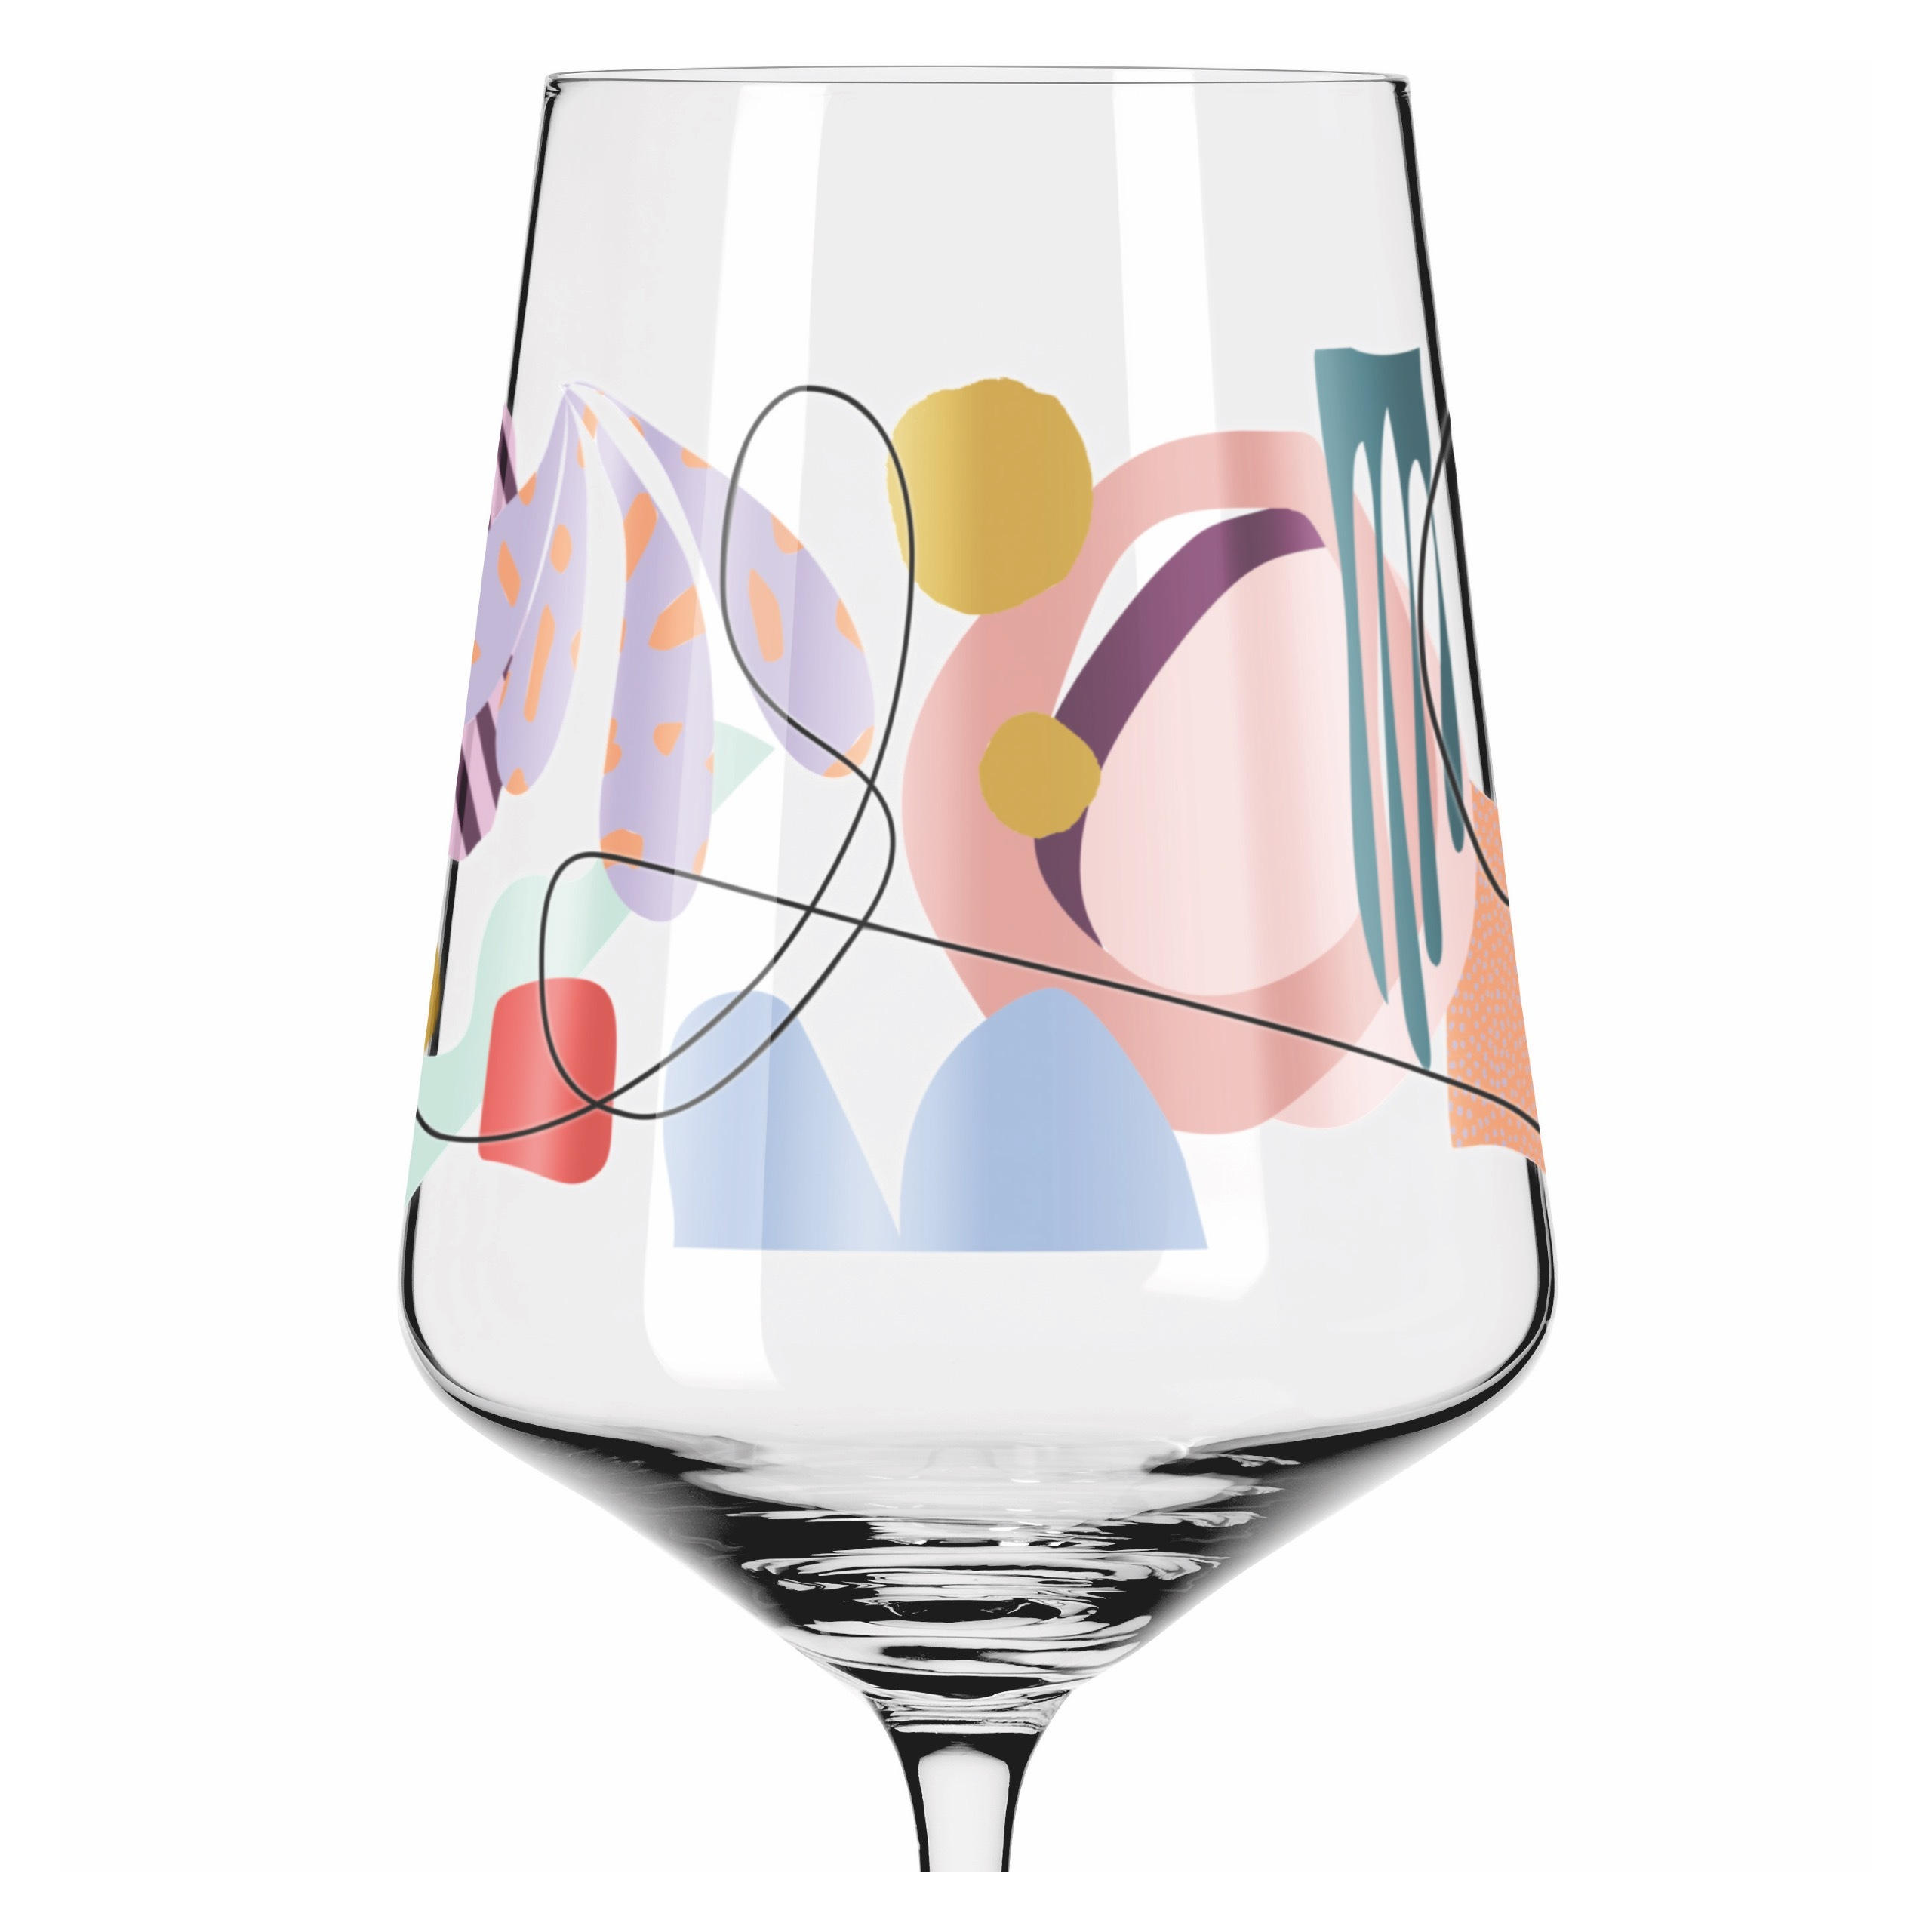 SPRITZERGLAS Sommerrausch  - Orange/Rosa, Basics, Glas (8,3/22,5cm) - Ritzenhoff